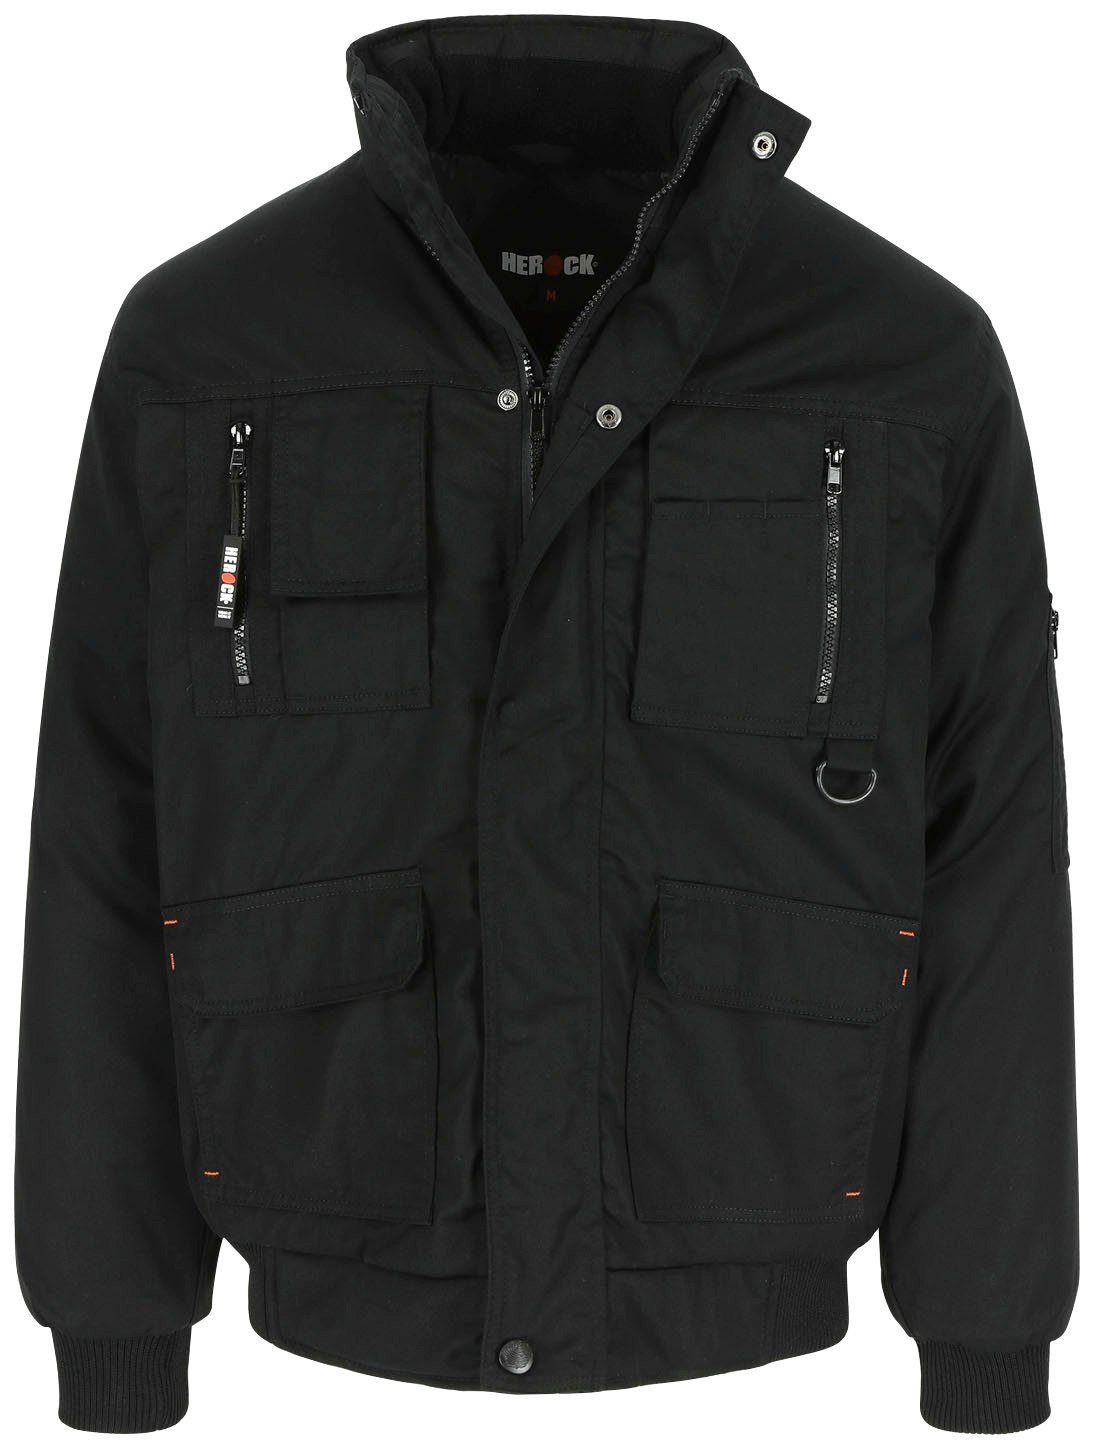 Jacke robust, mit viele Typhon Fleece-Kragen, schwarz Herock Arbeitsjacke Wasserabweisend viele Farben Taschen,